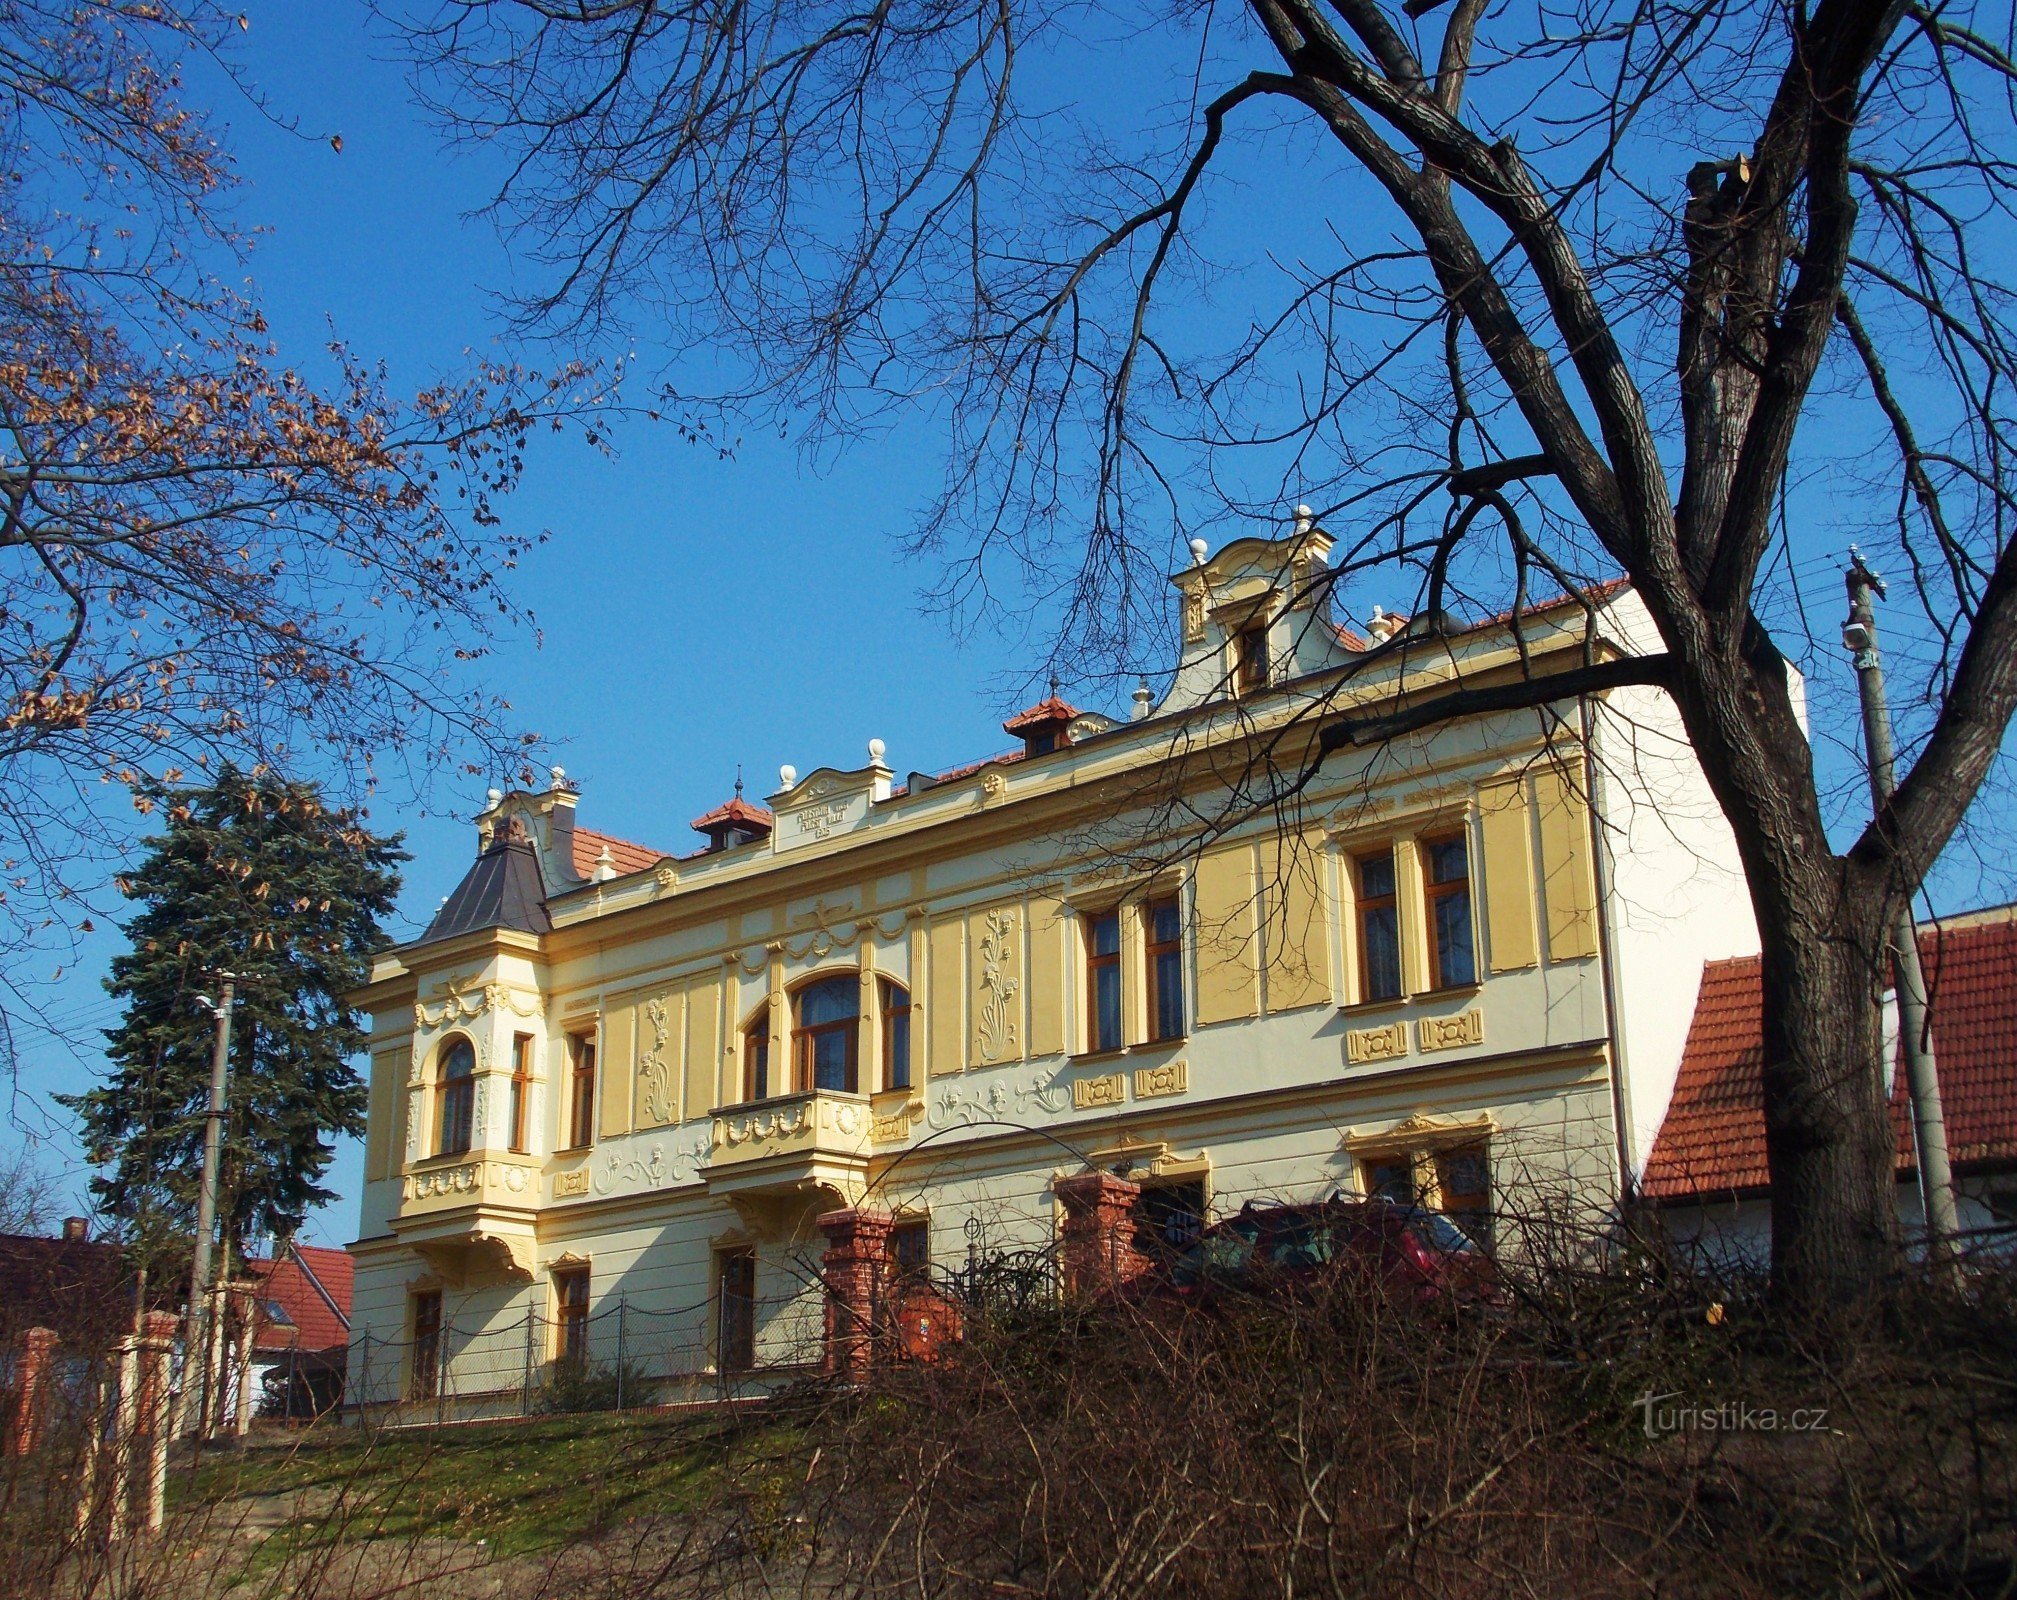 Fúrst's Villa, pensionat för boende i centrum av Bzenc